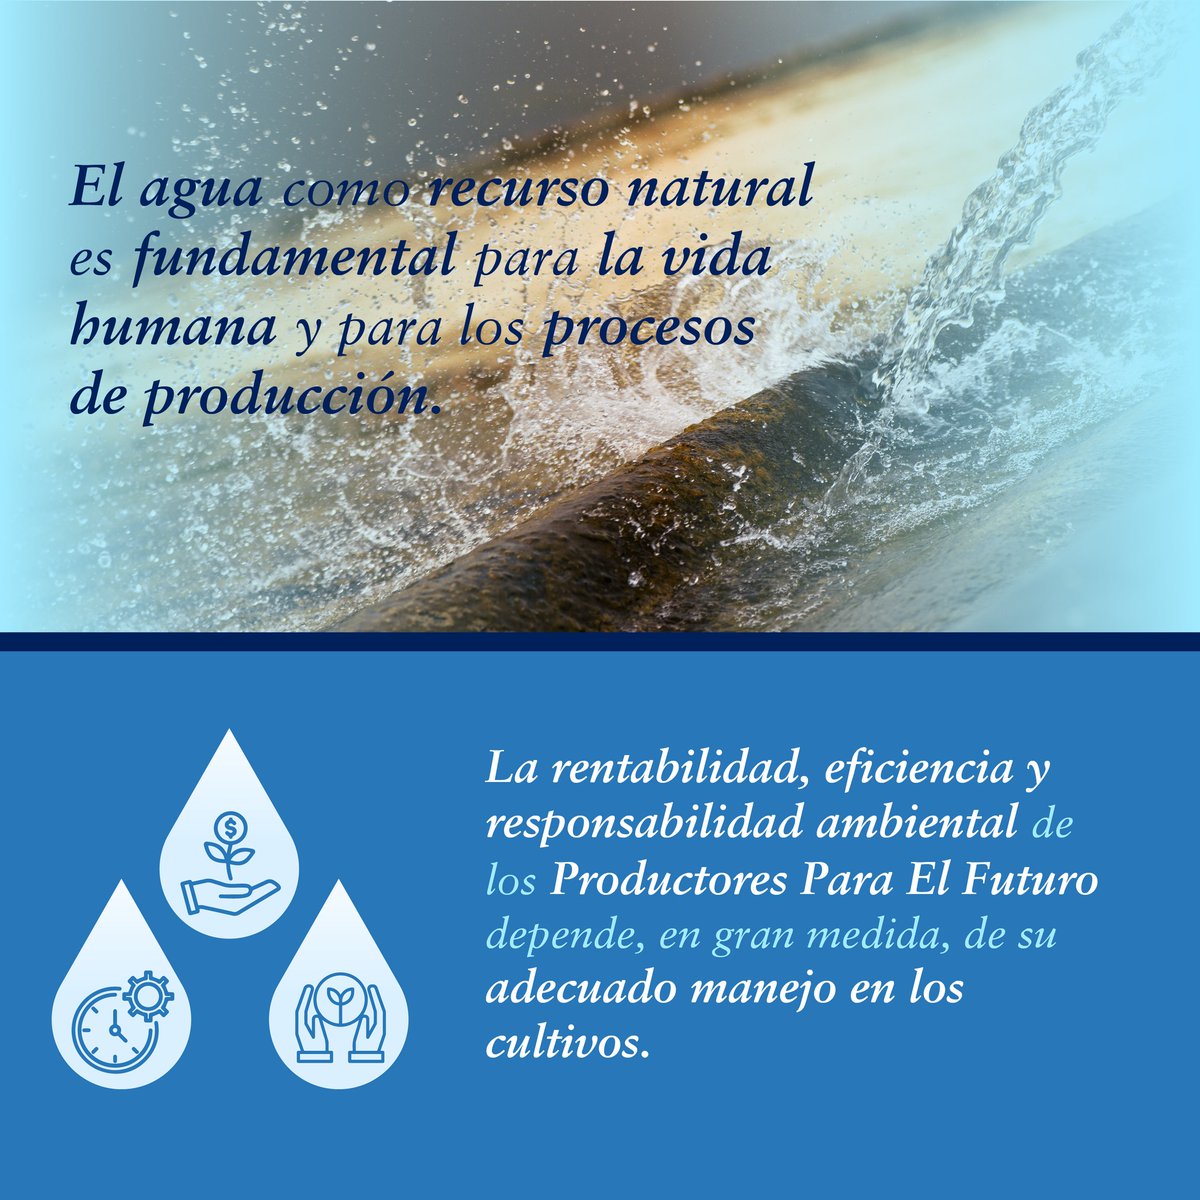 Hoy en el #DíaMundialdelAgua, resaltamos la importancia del agua dulce y su gestión sostenible; es vital para la vida humana y producción de alimentos. La rentabilidad y eficiencia de los #ProductoresParaElFuturo depende del buen manejo del agua en sus cultivos. #CuidemosElAgua